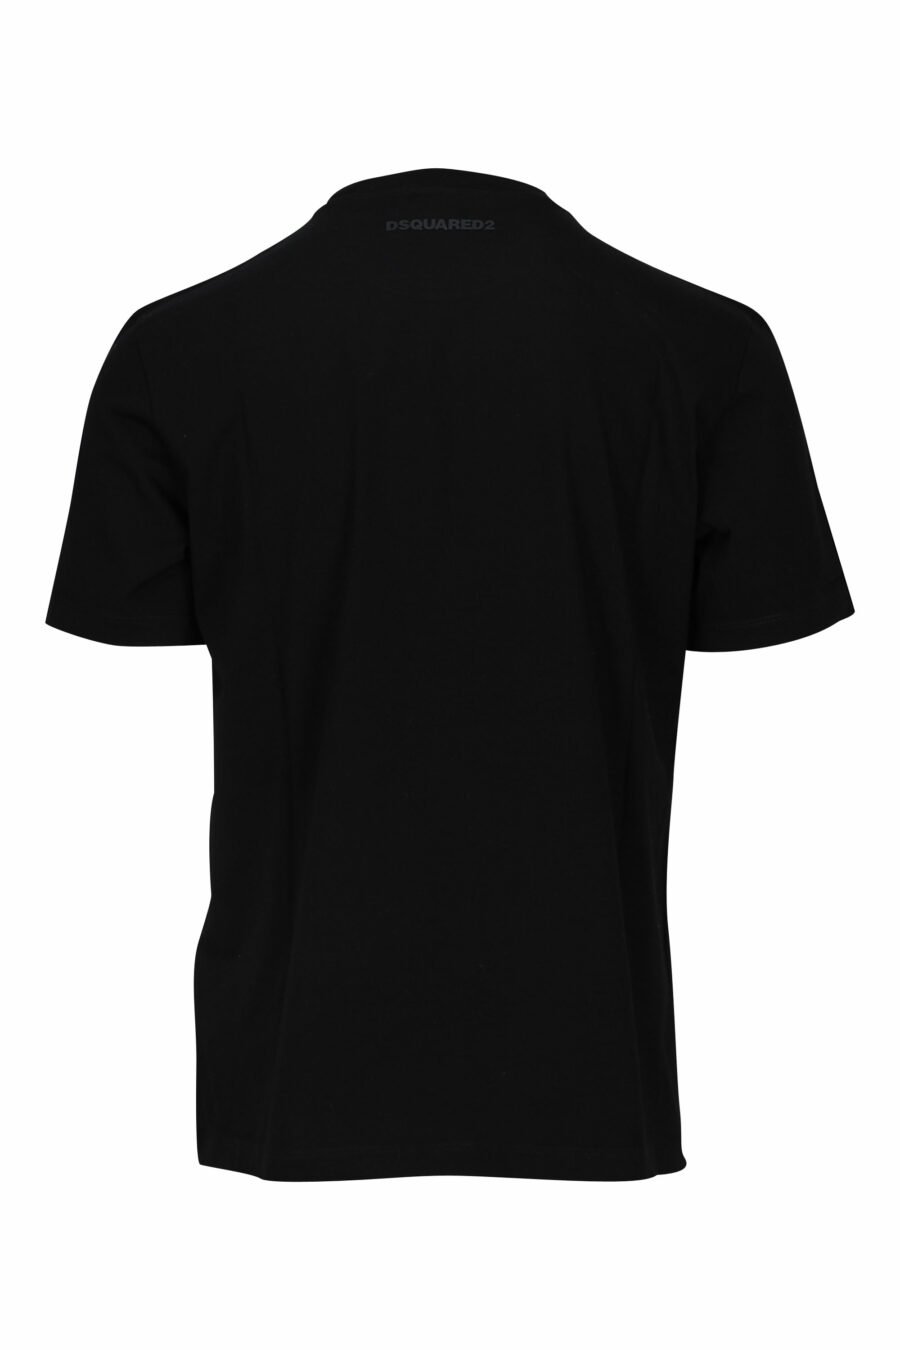 Camiseta negra con logo "icon" blanco de cuadros - 8052134981399 1